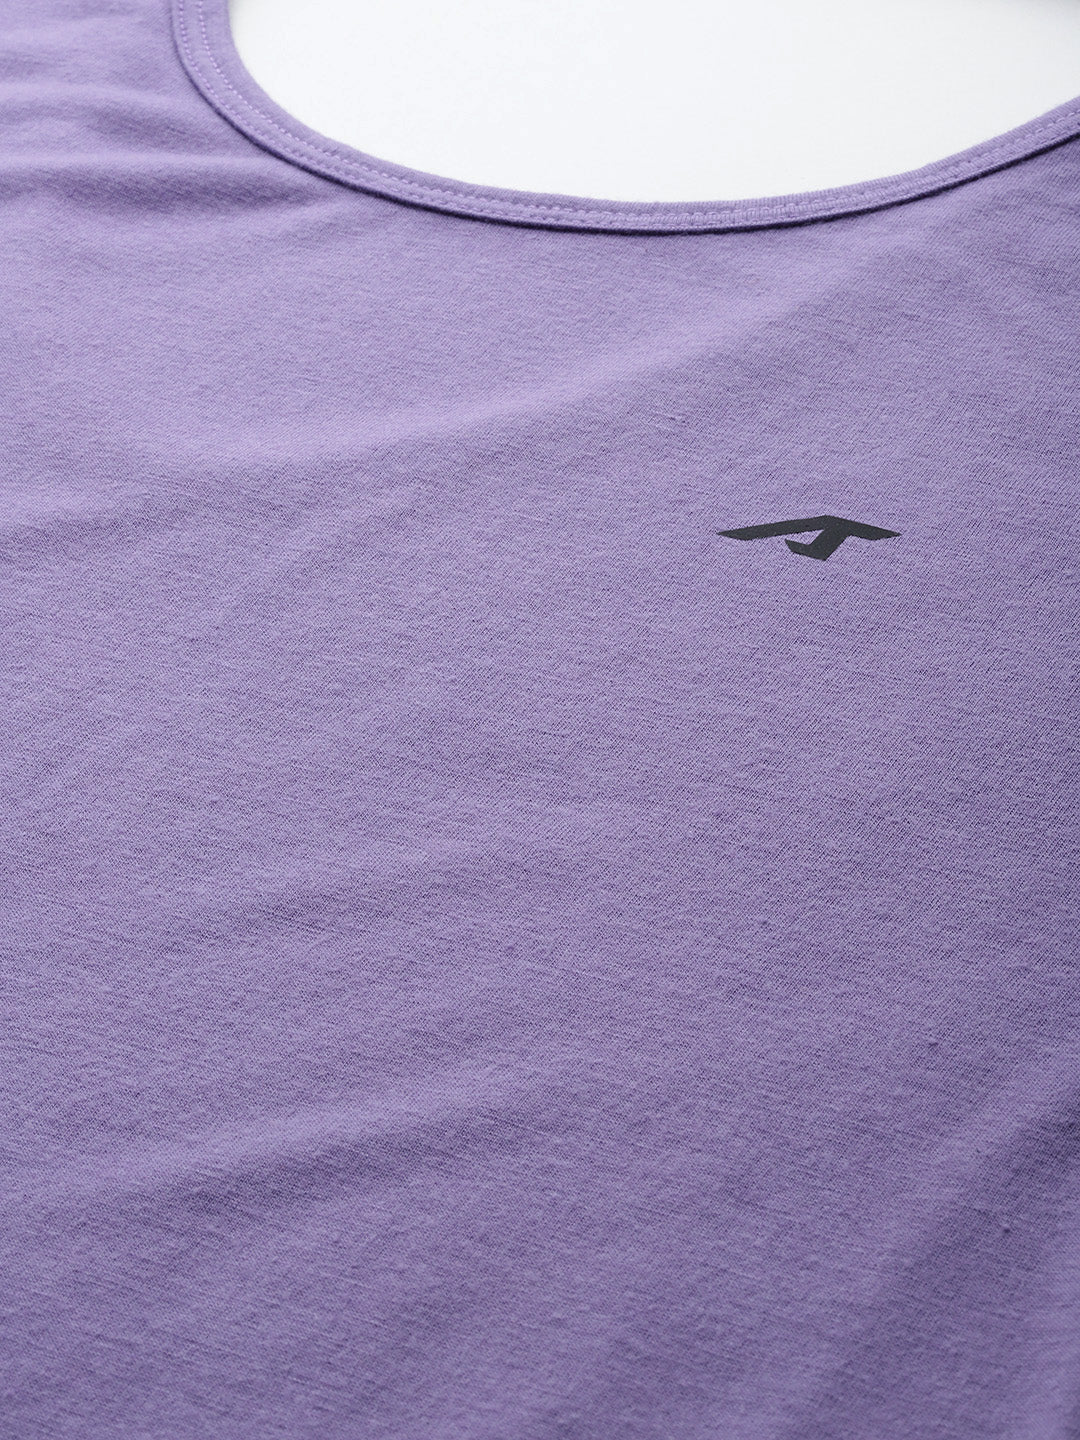 Alcis Women Purple Slim Fit Sports T-shirt